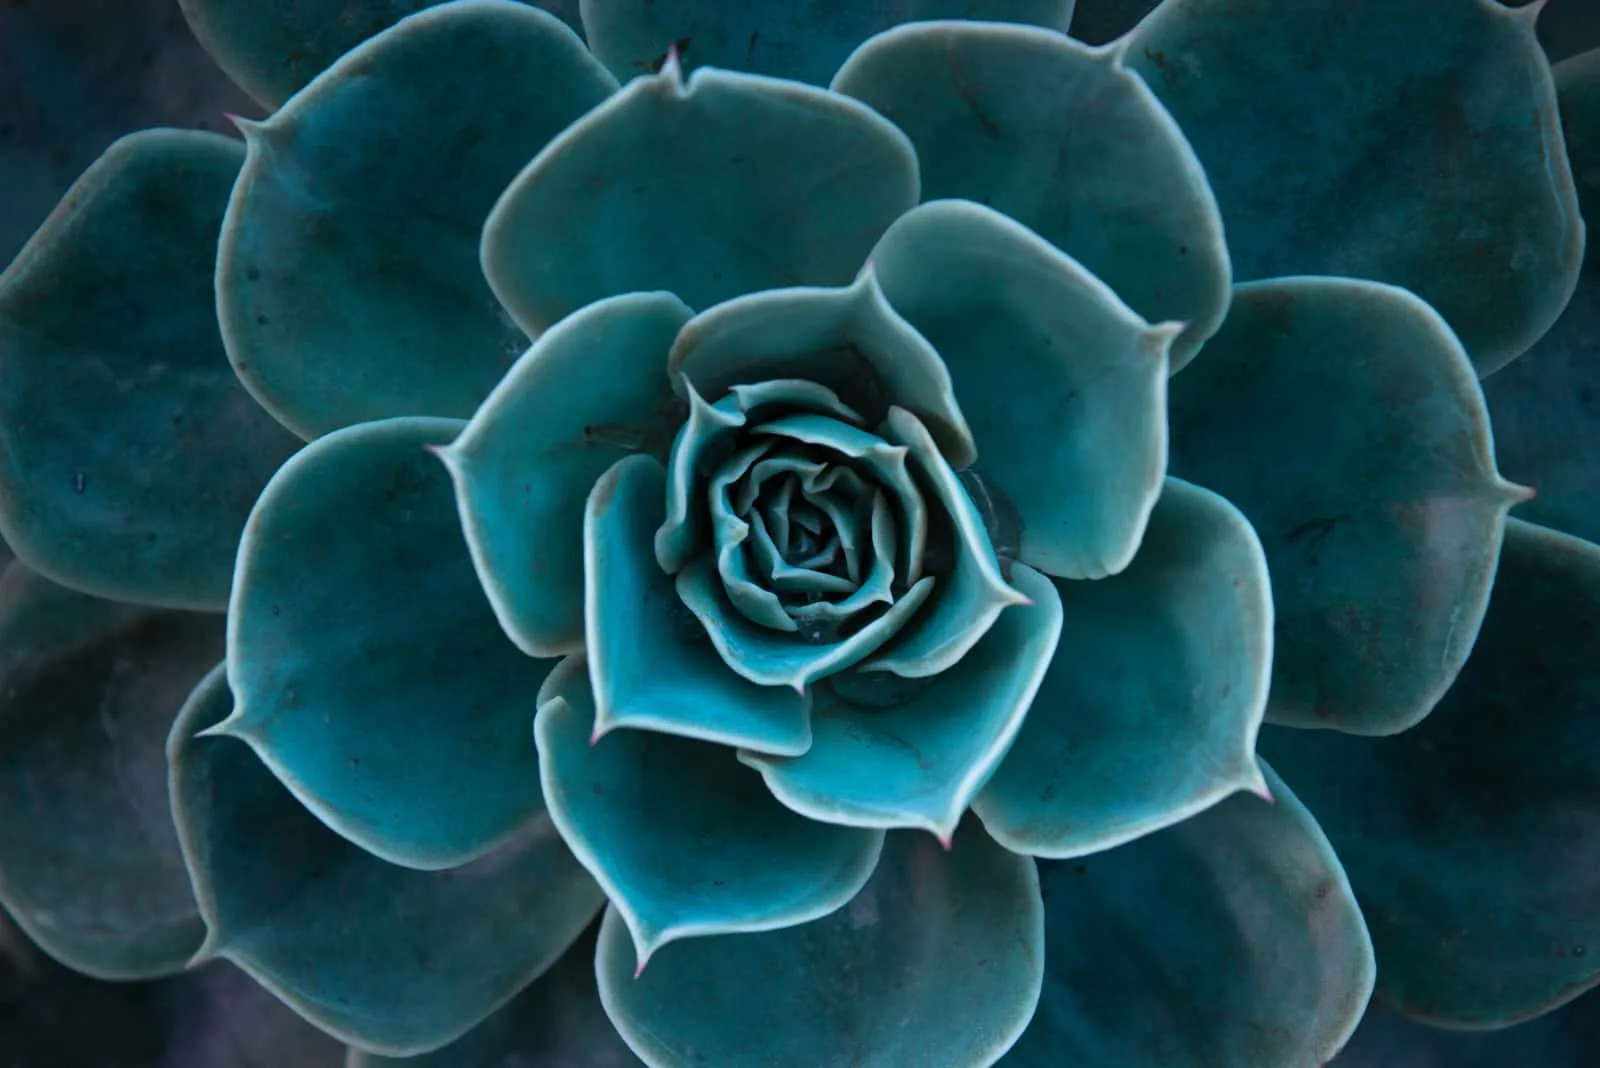 close up of succulent